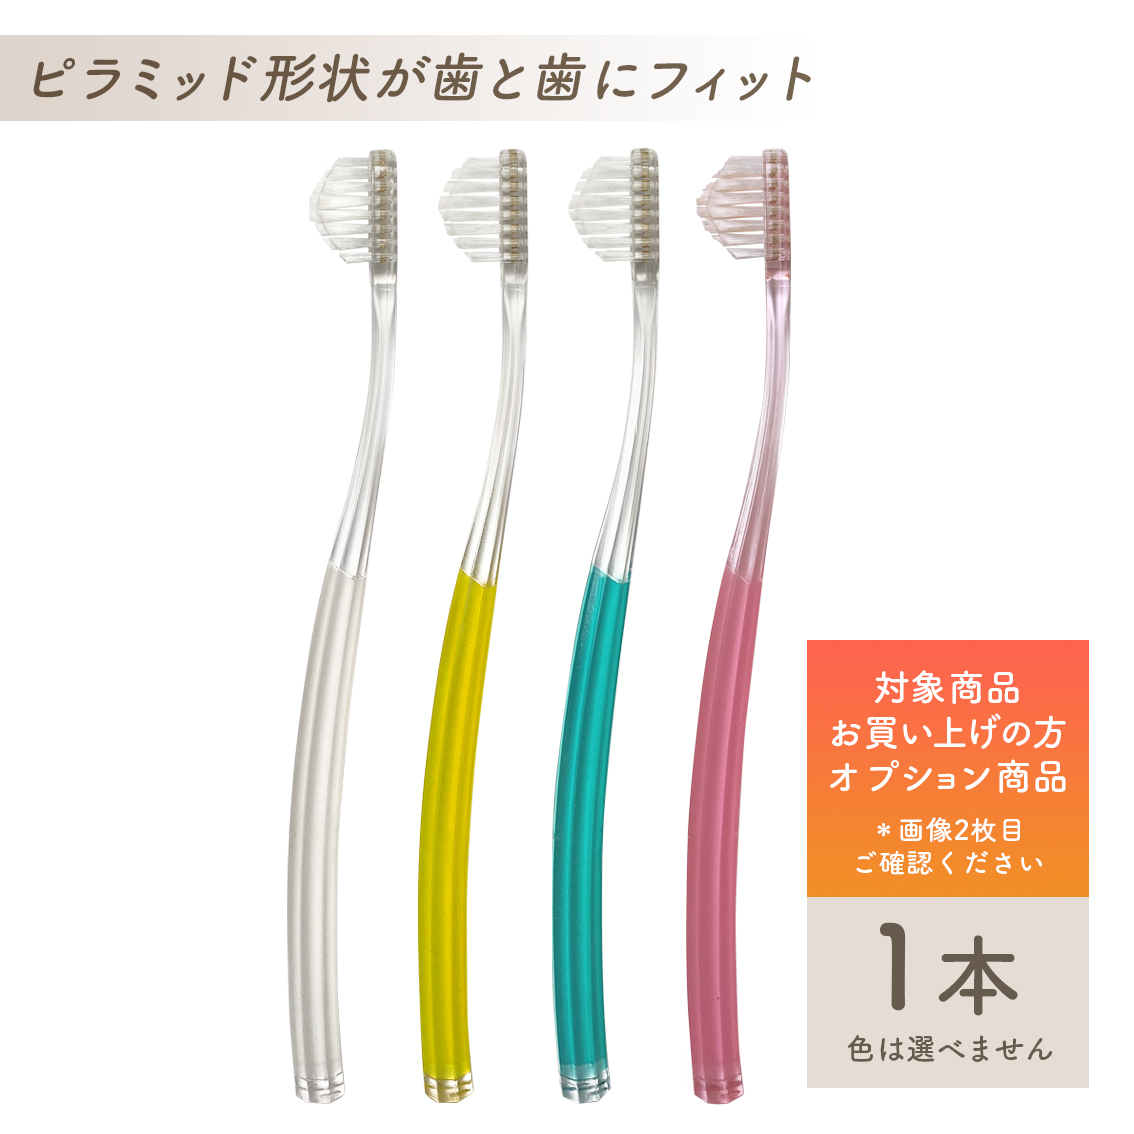 超特価】 奇跡の歯ブラシ 大人用2本+こども用 2本 合計4本セット 色選べます